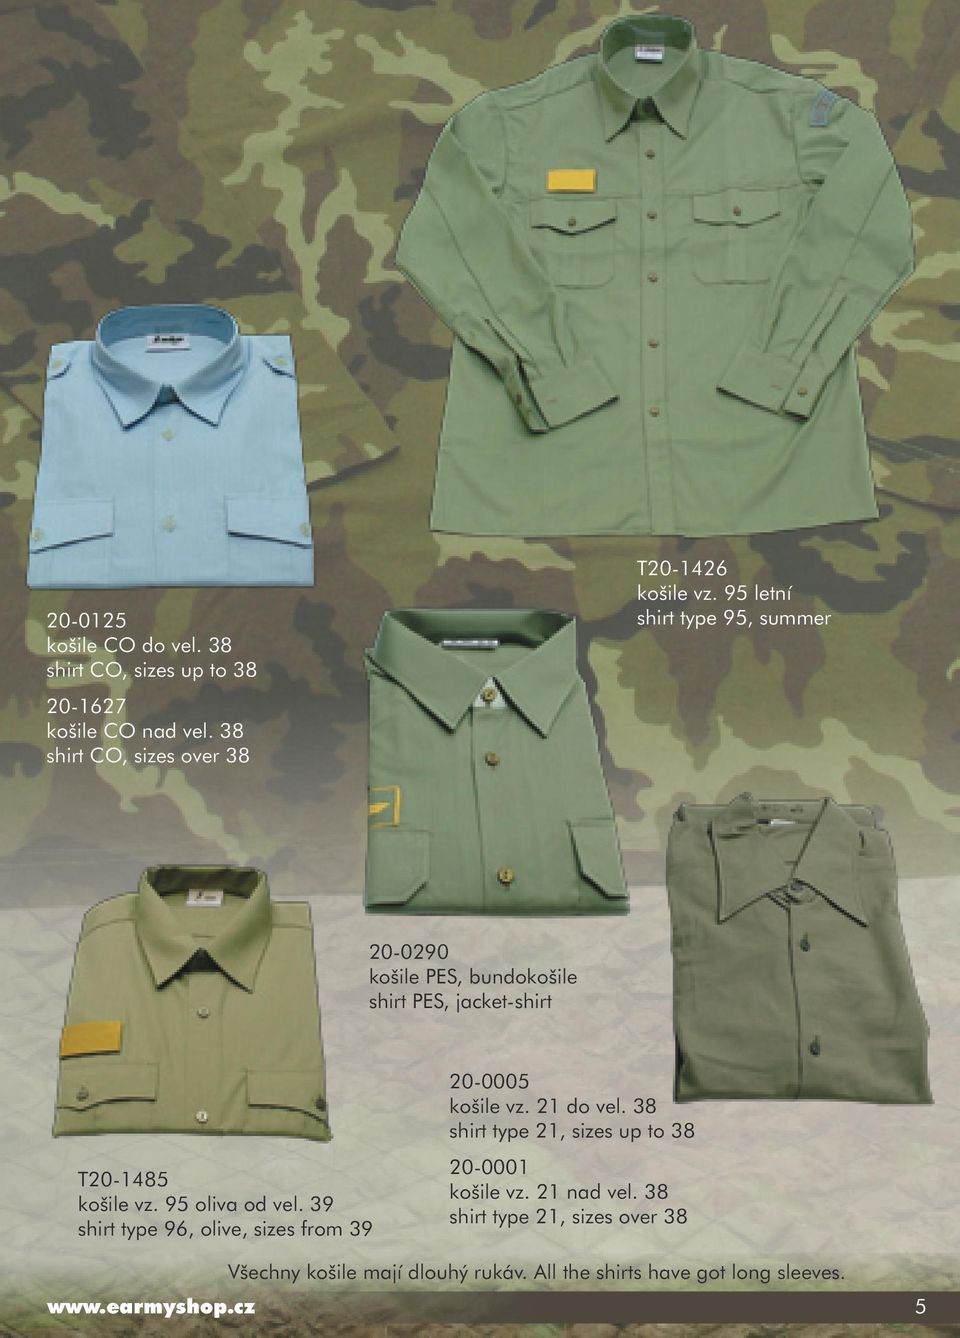 39 shirt type 96, olive, sizes from 39 20-0005 košile vz. 21 do vel. 38 shirt type 21, sizes up to 38 20-0001 košile vz.